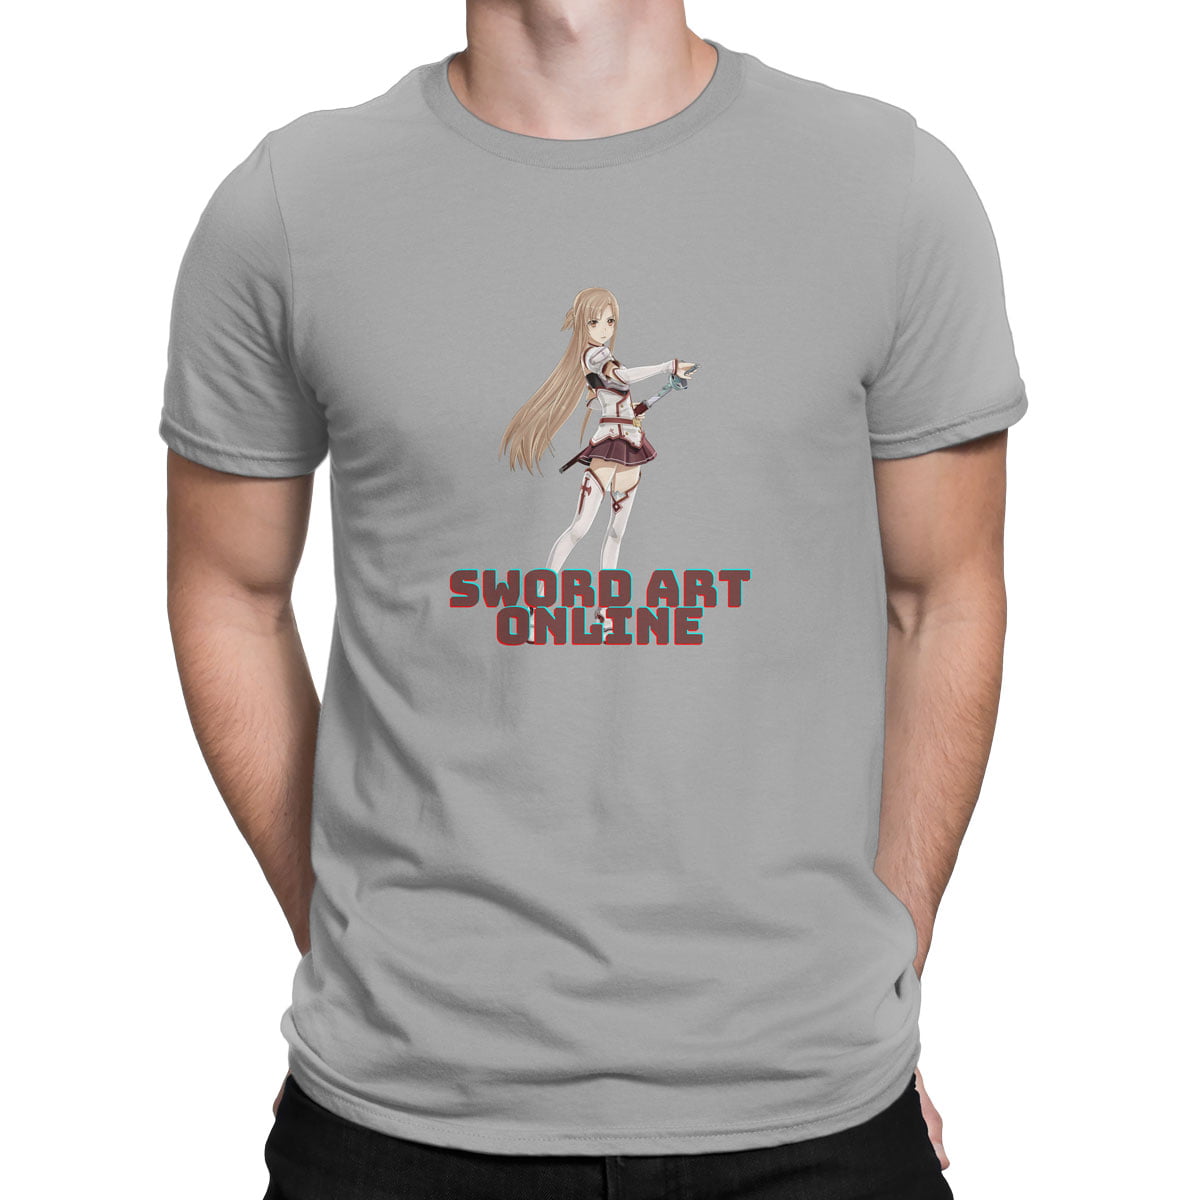 Sword art online asuna erkek tisort g - sword art online - asuna baskılı erkek t-shirt - figurex